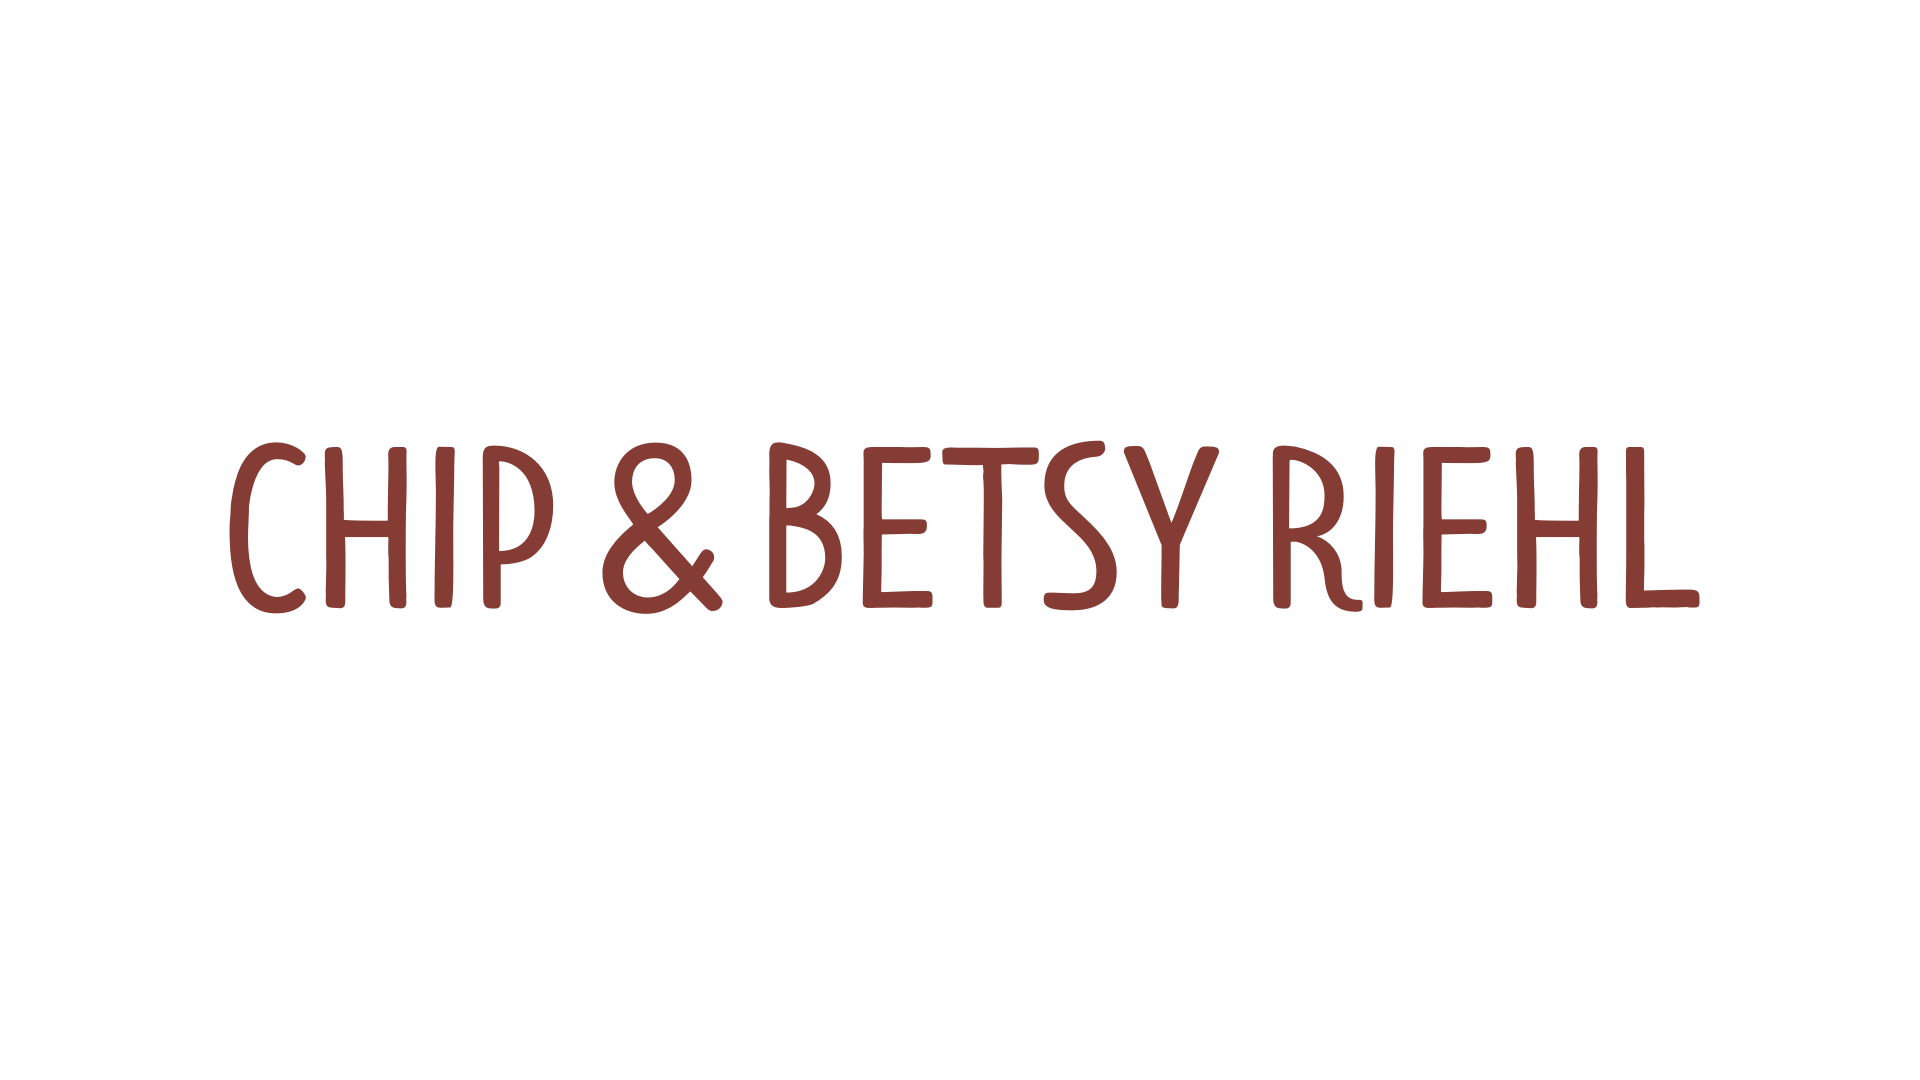 BIRCH Chip and Betsy Riehl v2